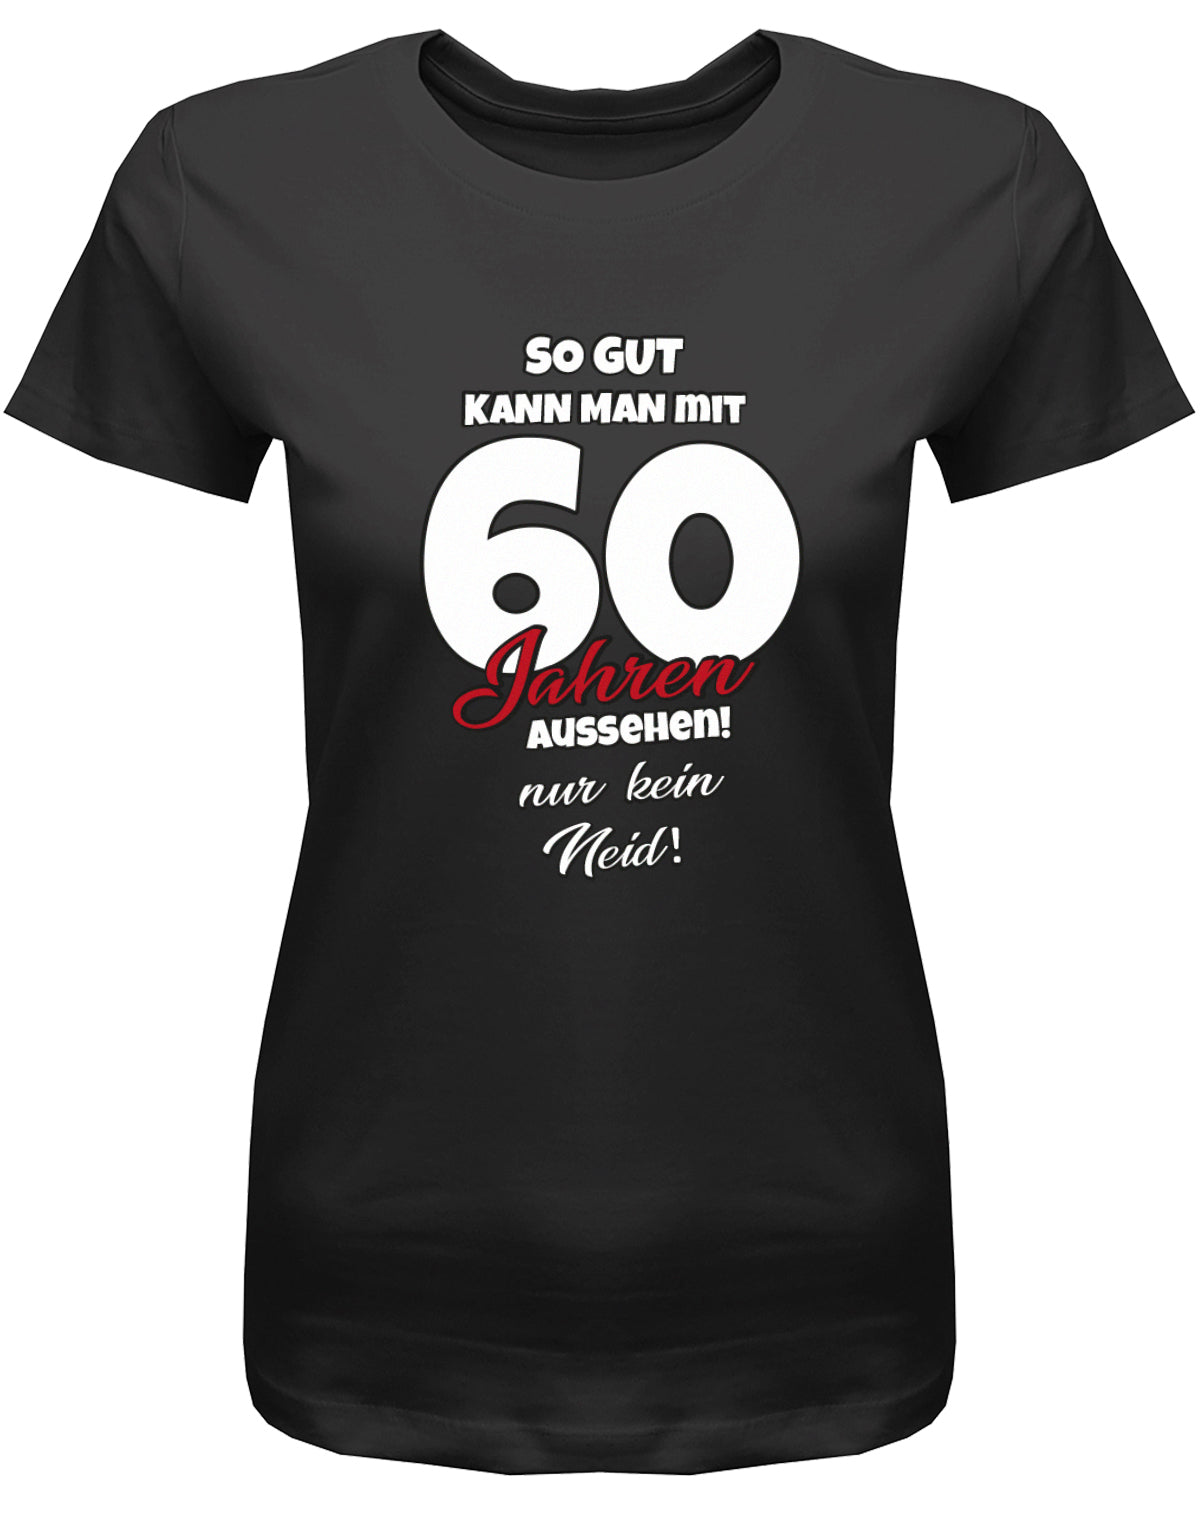 Lustiges T-Shirt zum 60 Geburtstag für die Frau Bedruckt mit So gut kann man mit 60 Jahren aussehen! Nur kein Neid! SChwarz